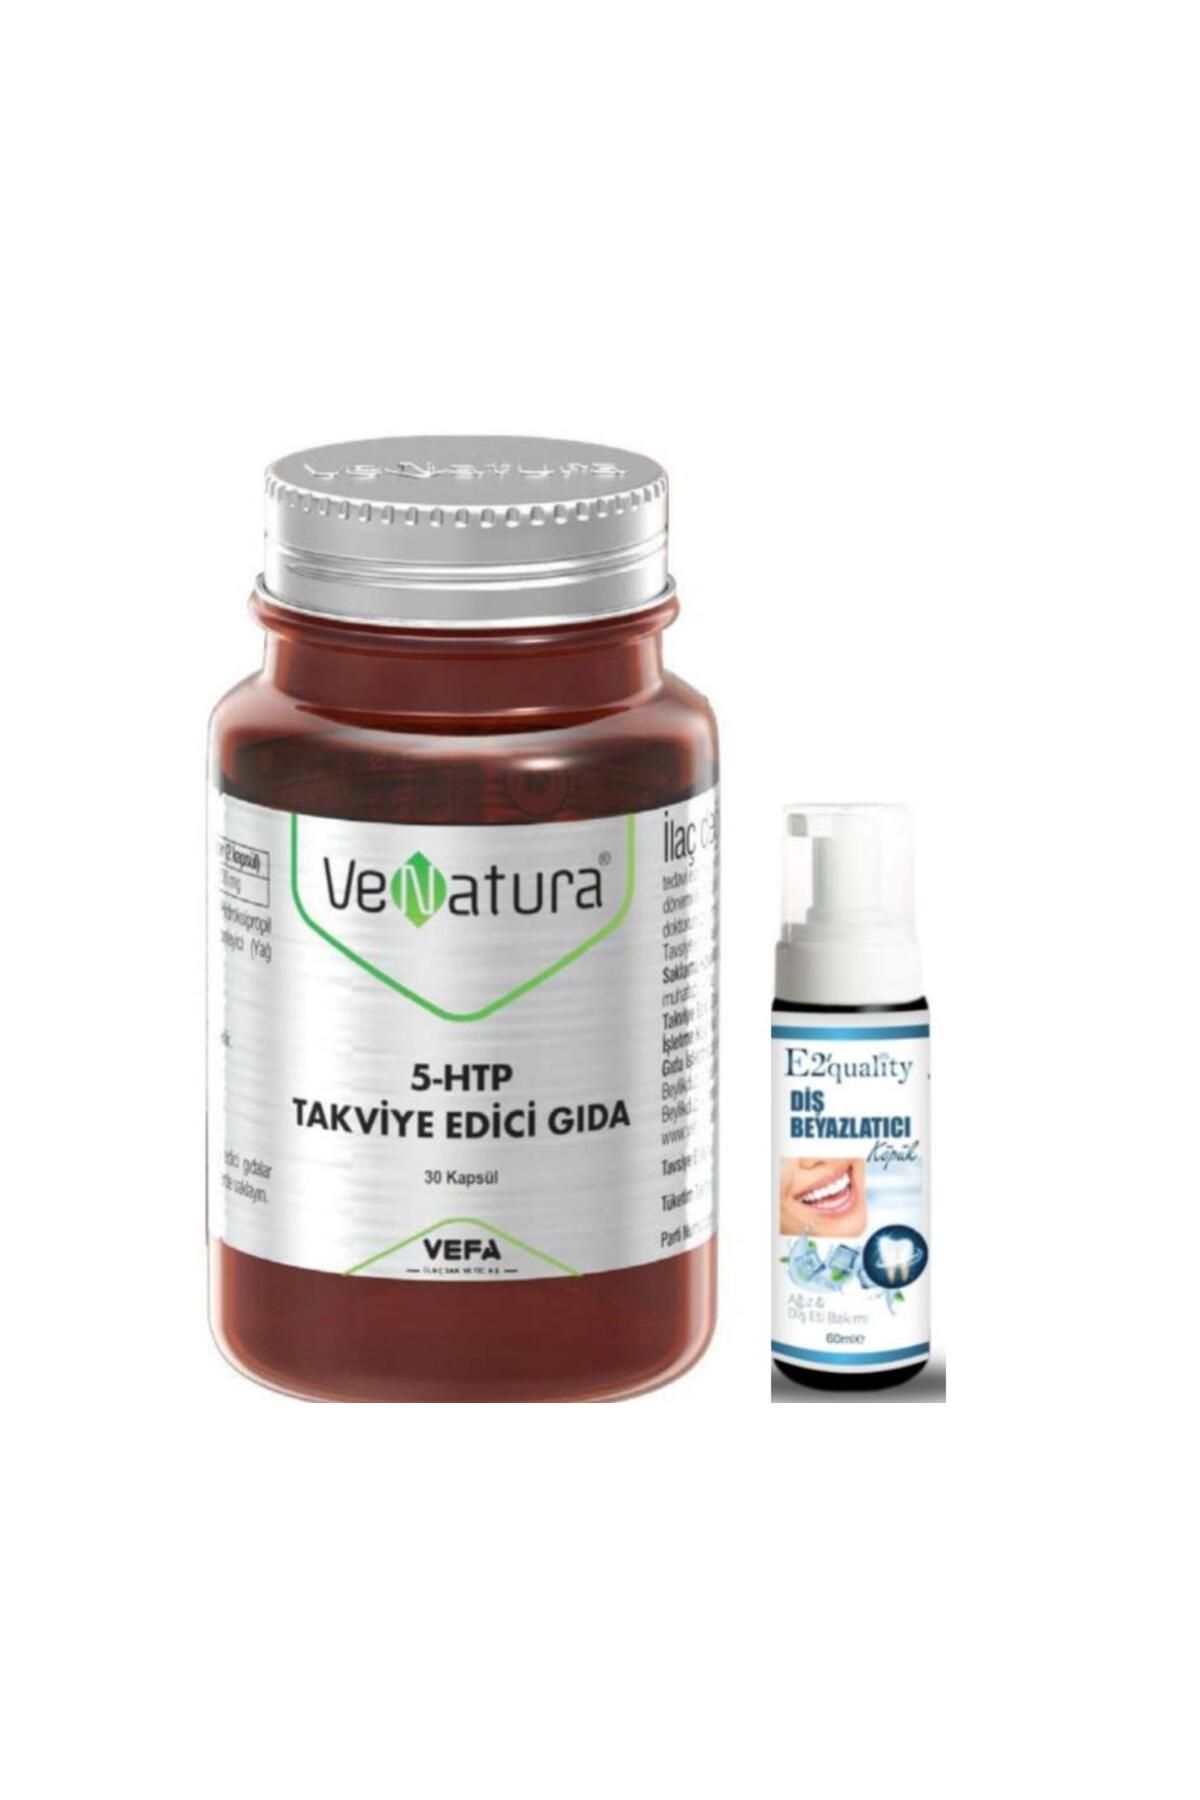 Venatura 5-HTP Takviye Edici Gıda 30 Kapsül- Diş Beyazlatıcı Köpük Hediye